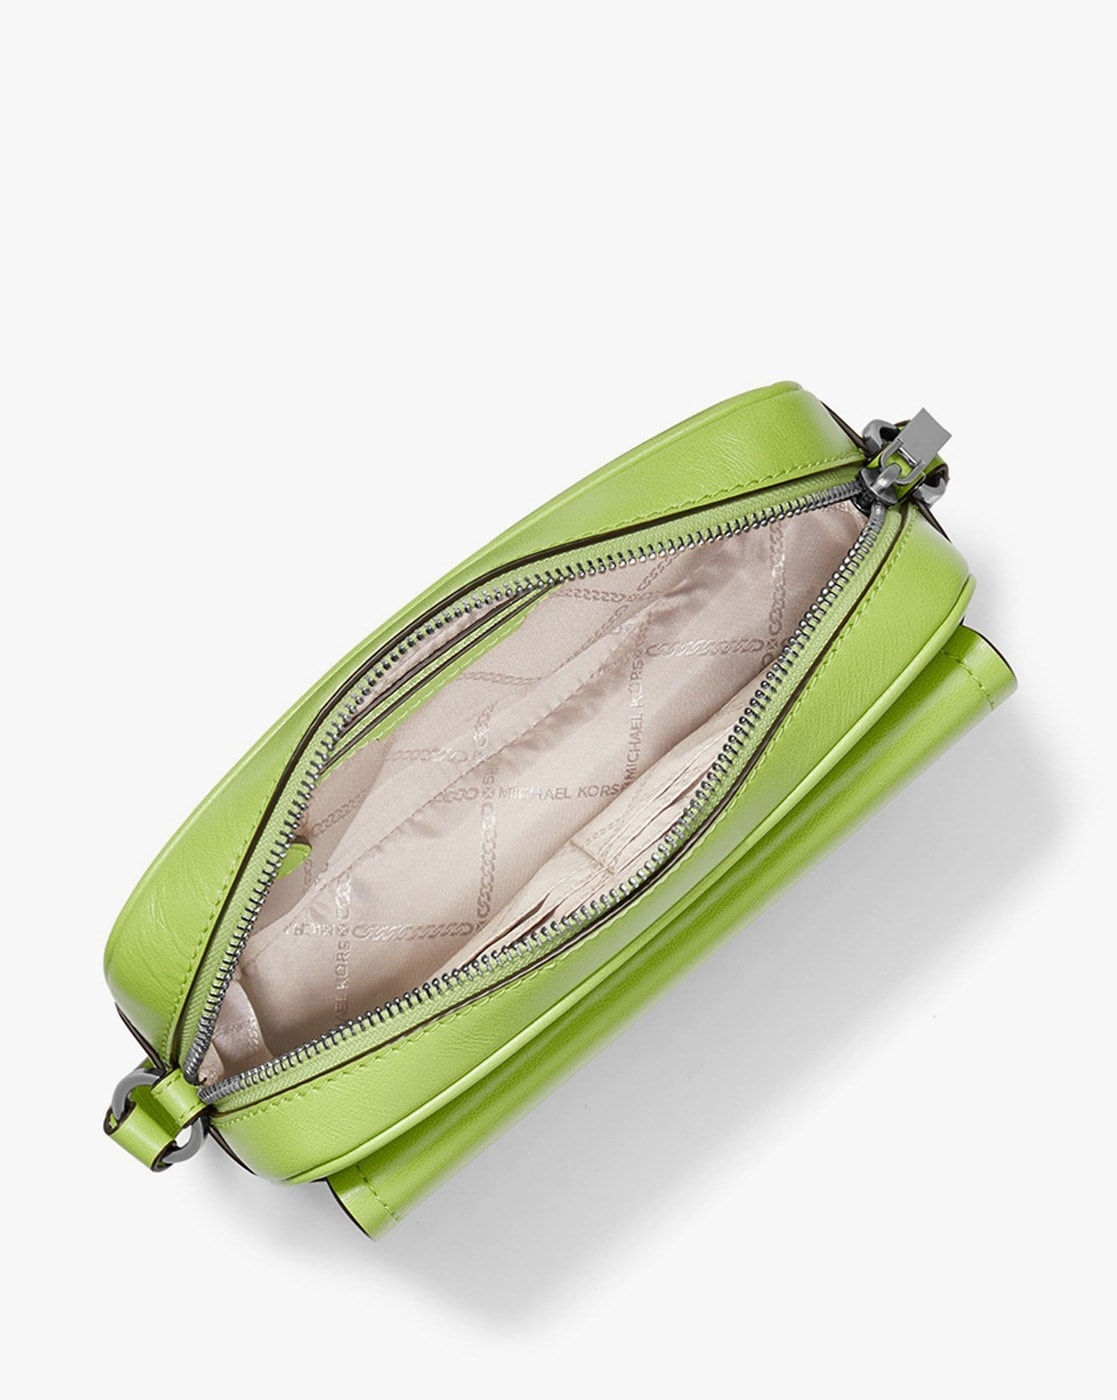 Michael Kors Large Tote Shoulder Bag Handbag Brown Green + Purse and Wallet  Set - Michael Kors bag - 194900918432 | Fash Brands